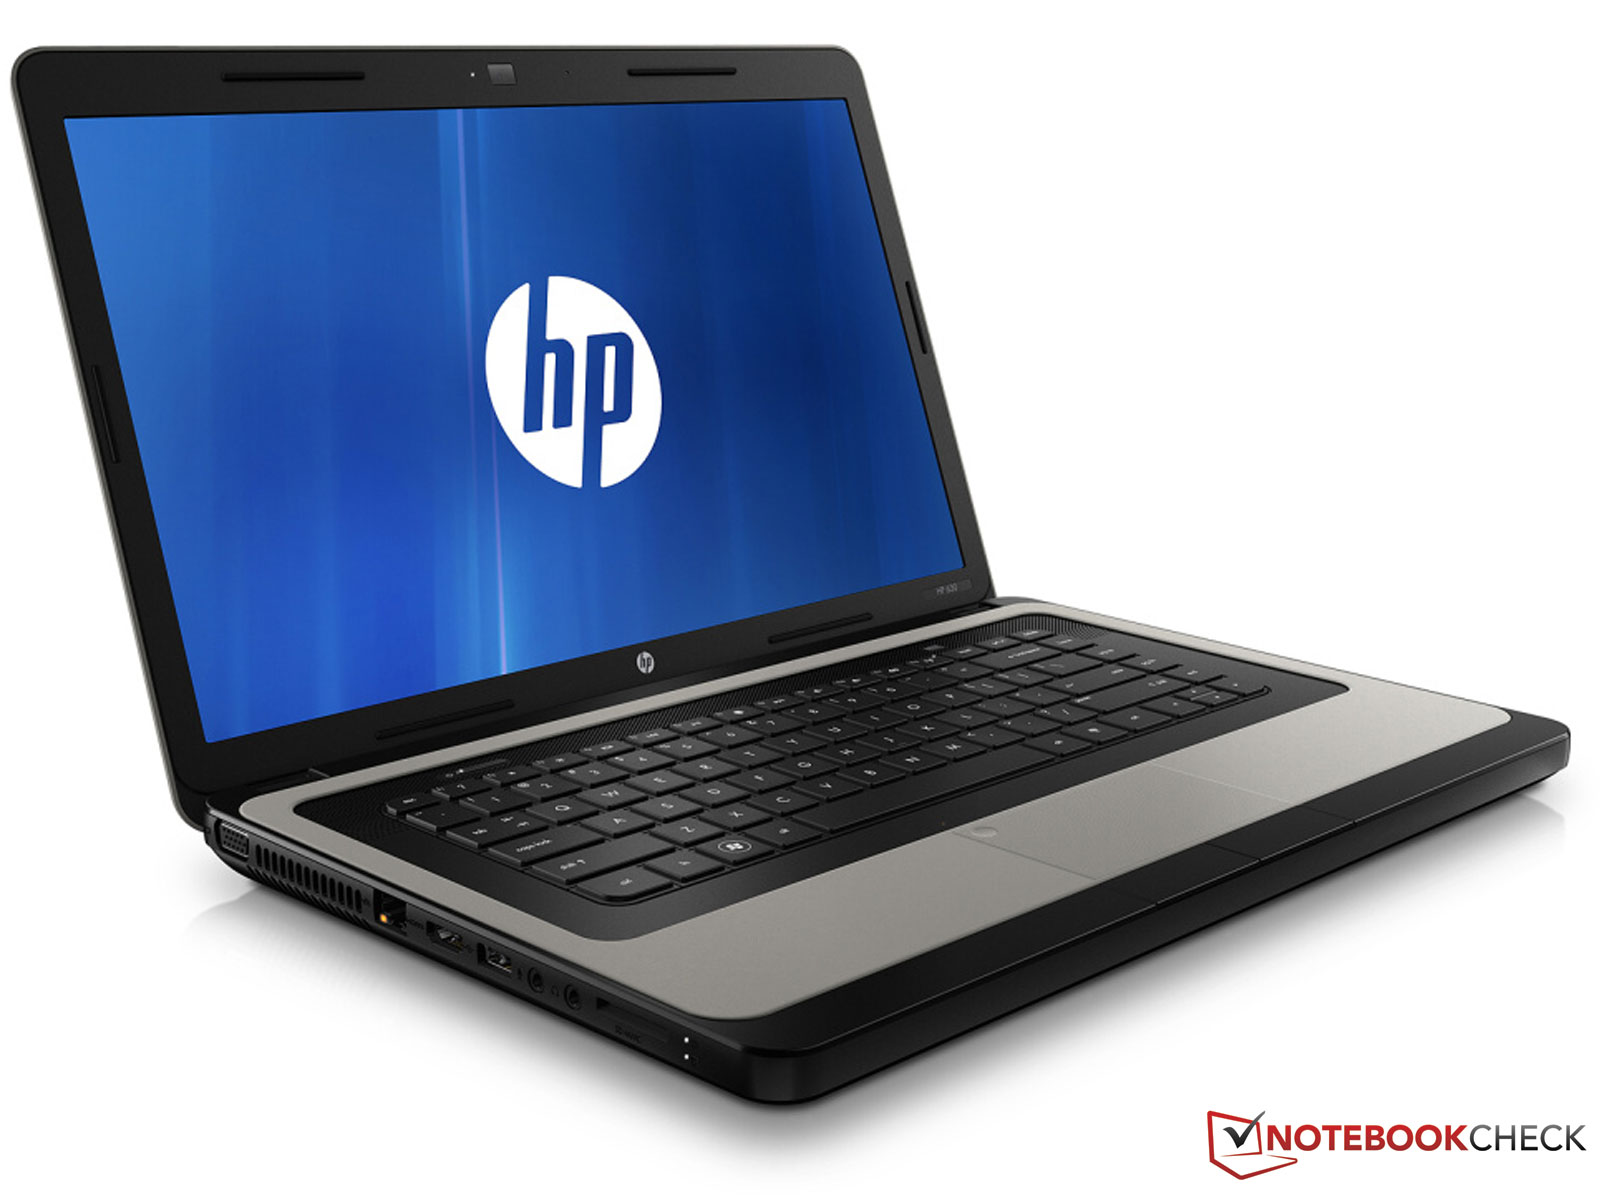 Review HP 635 LH416EAABD Notebook  NotebookCheck.net Reviews